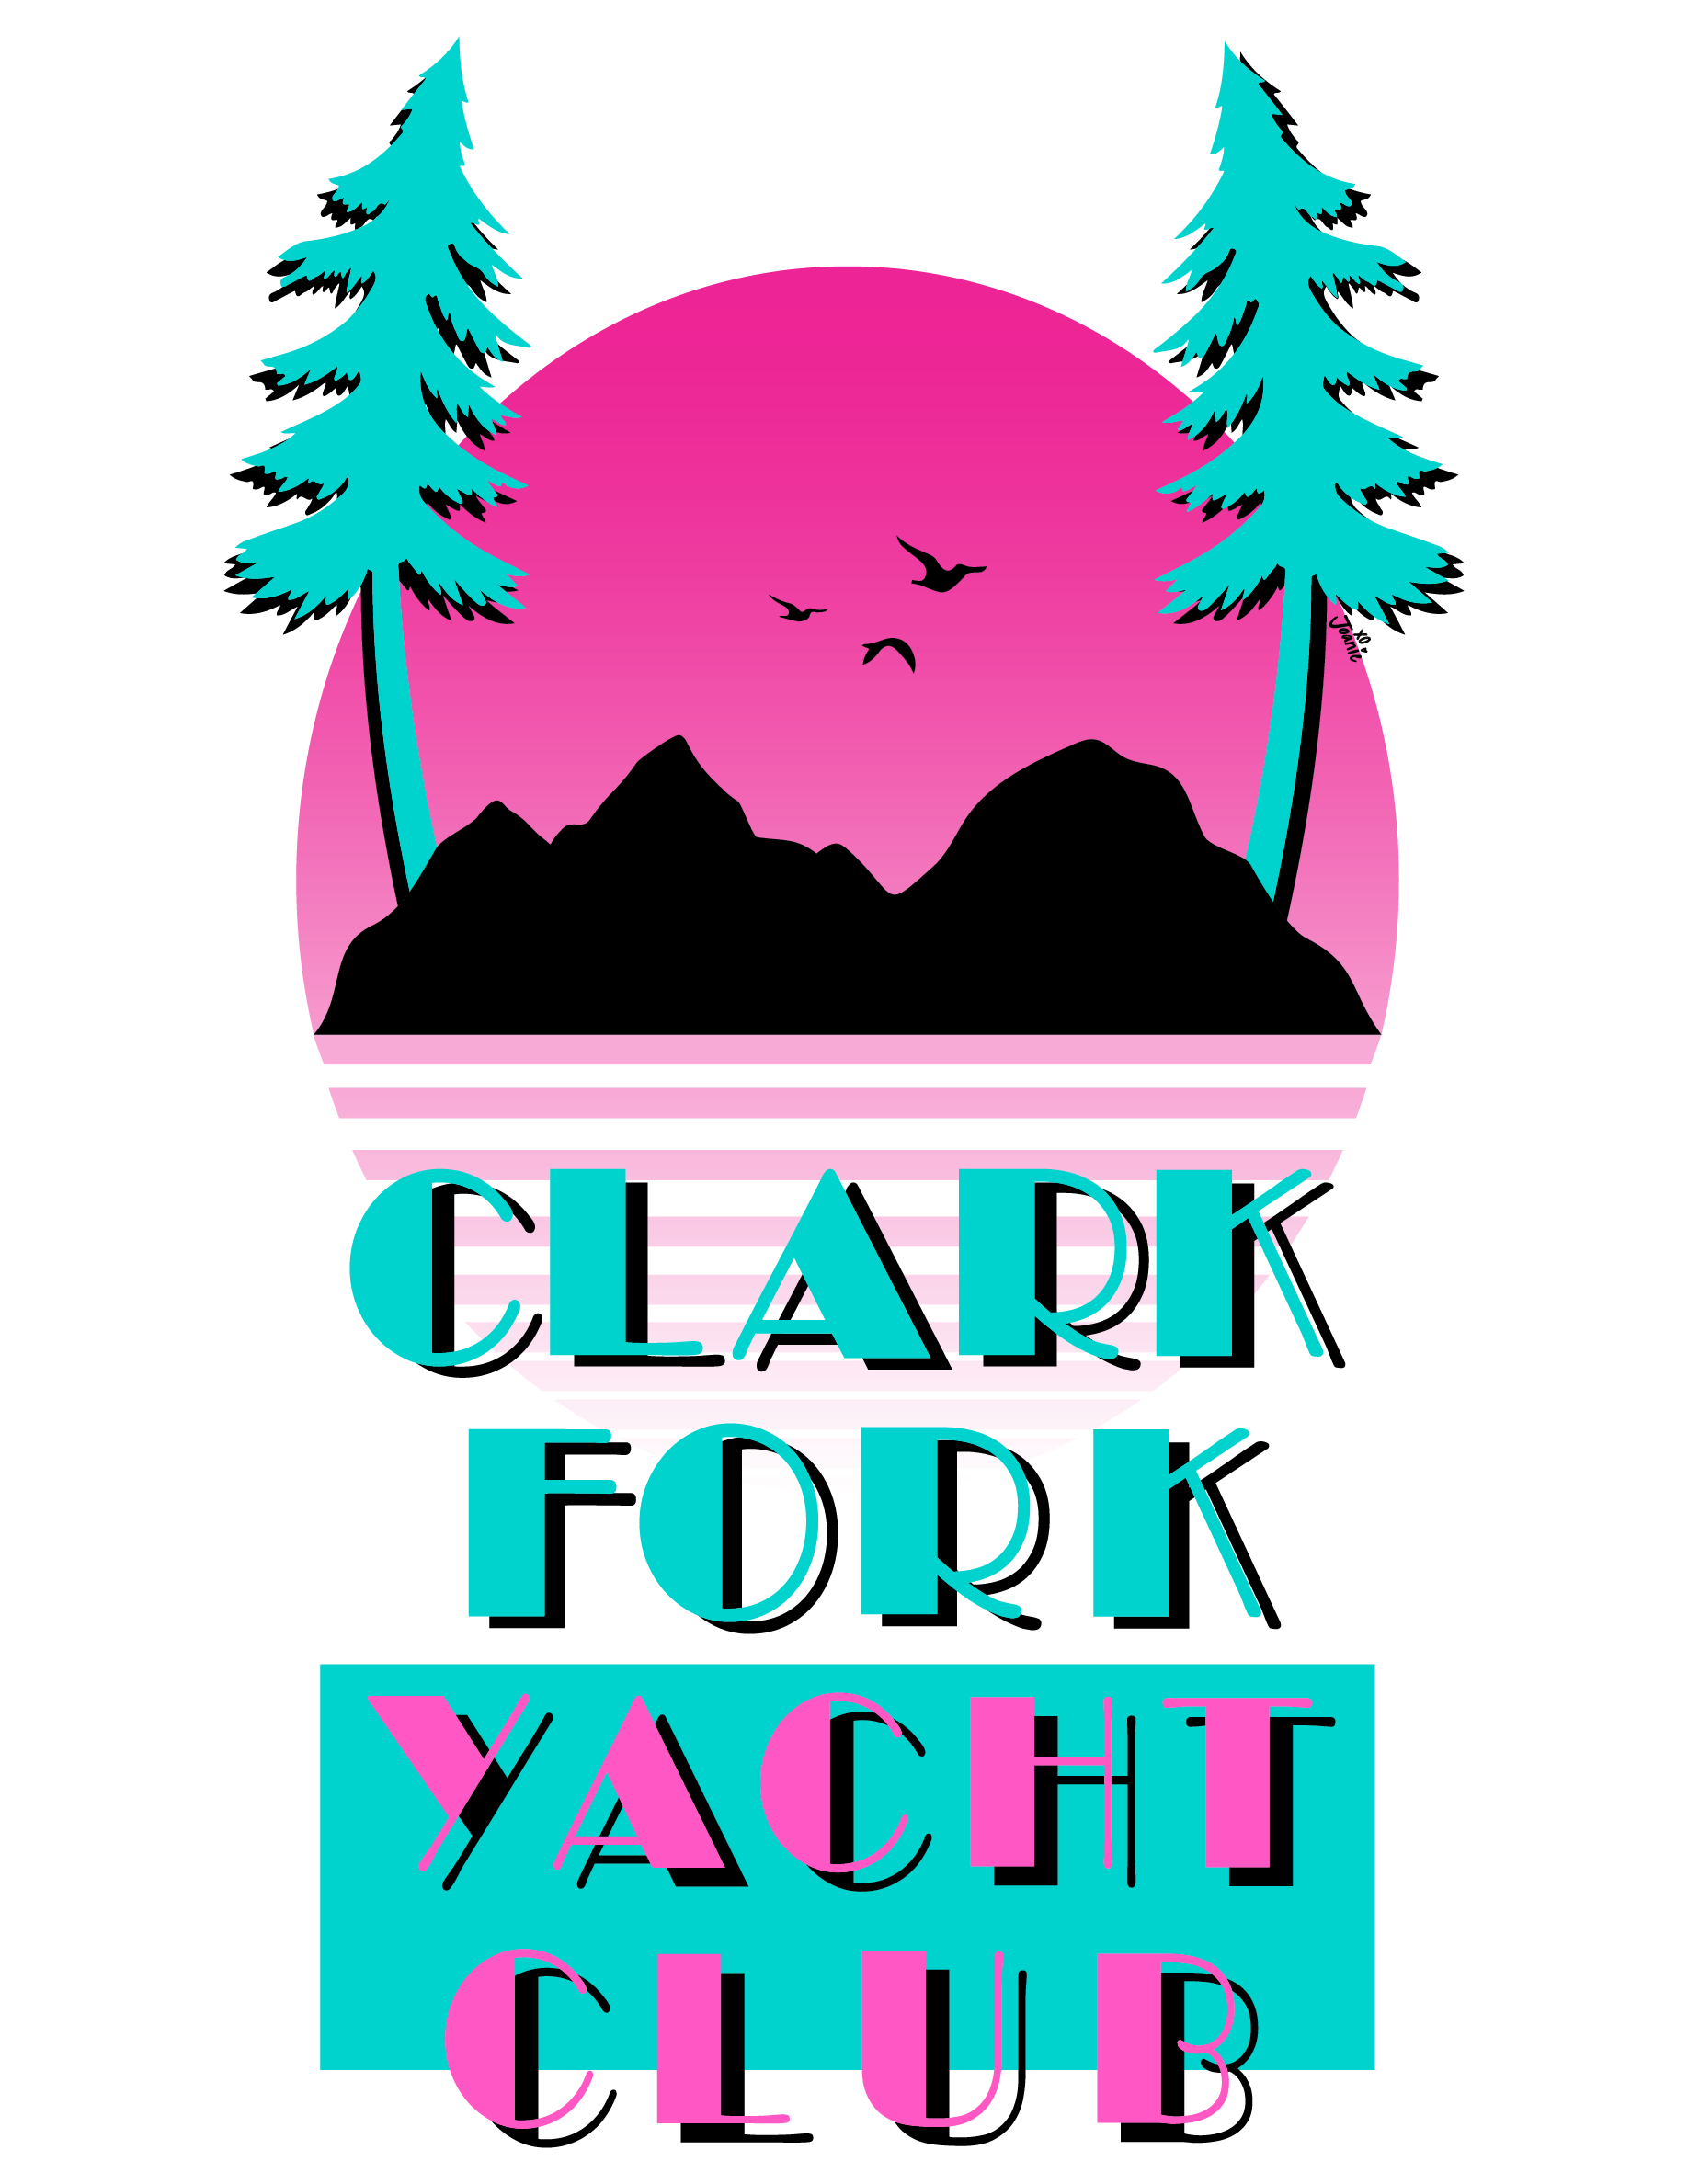 CLARK FORK YACHT CLUB - VICE SHIRT - MCCORMICK.png